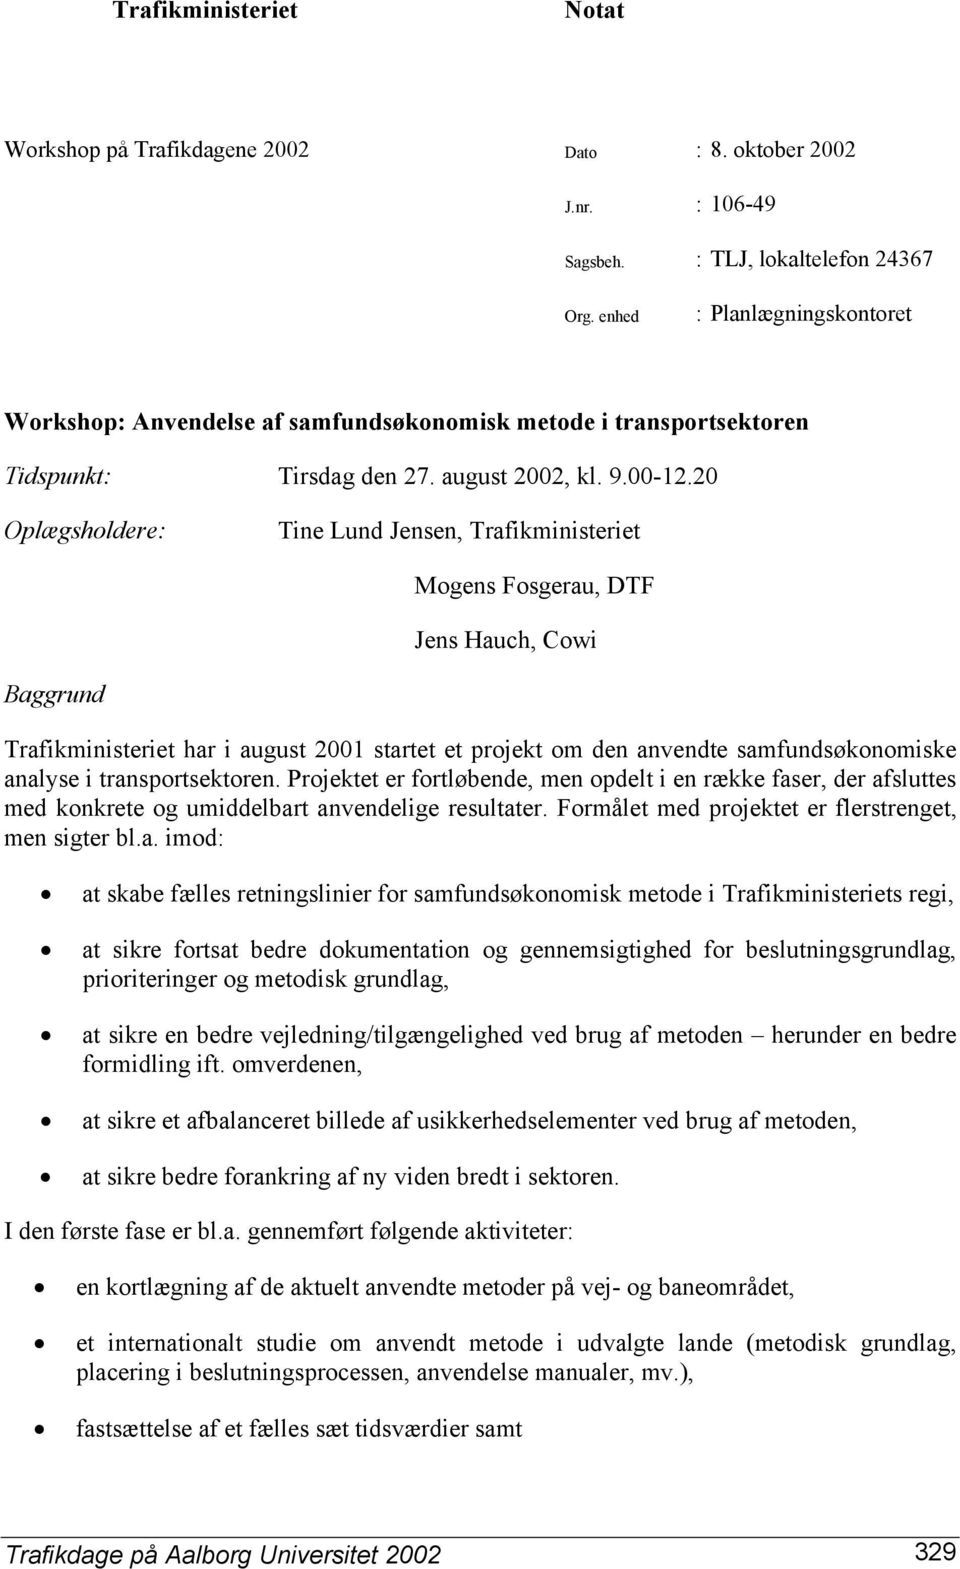 20 Oplægsholdere: Tine Lund Jensen, Trafikministeriet Mogens Fosgerau, DTF Jens Hauch, Cowi Baggrund Trafikministeriet har i august 2001 startet et projekt om den anvendte samfundsøkonomiske analyse